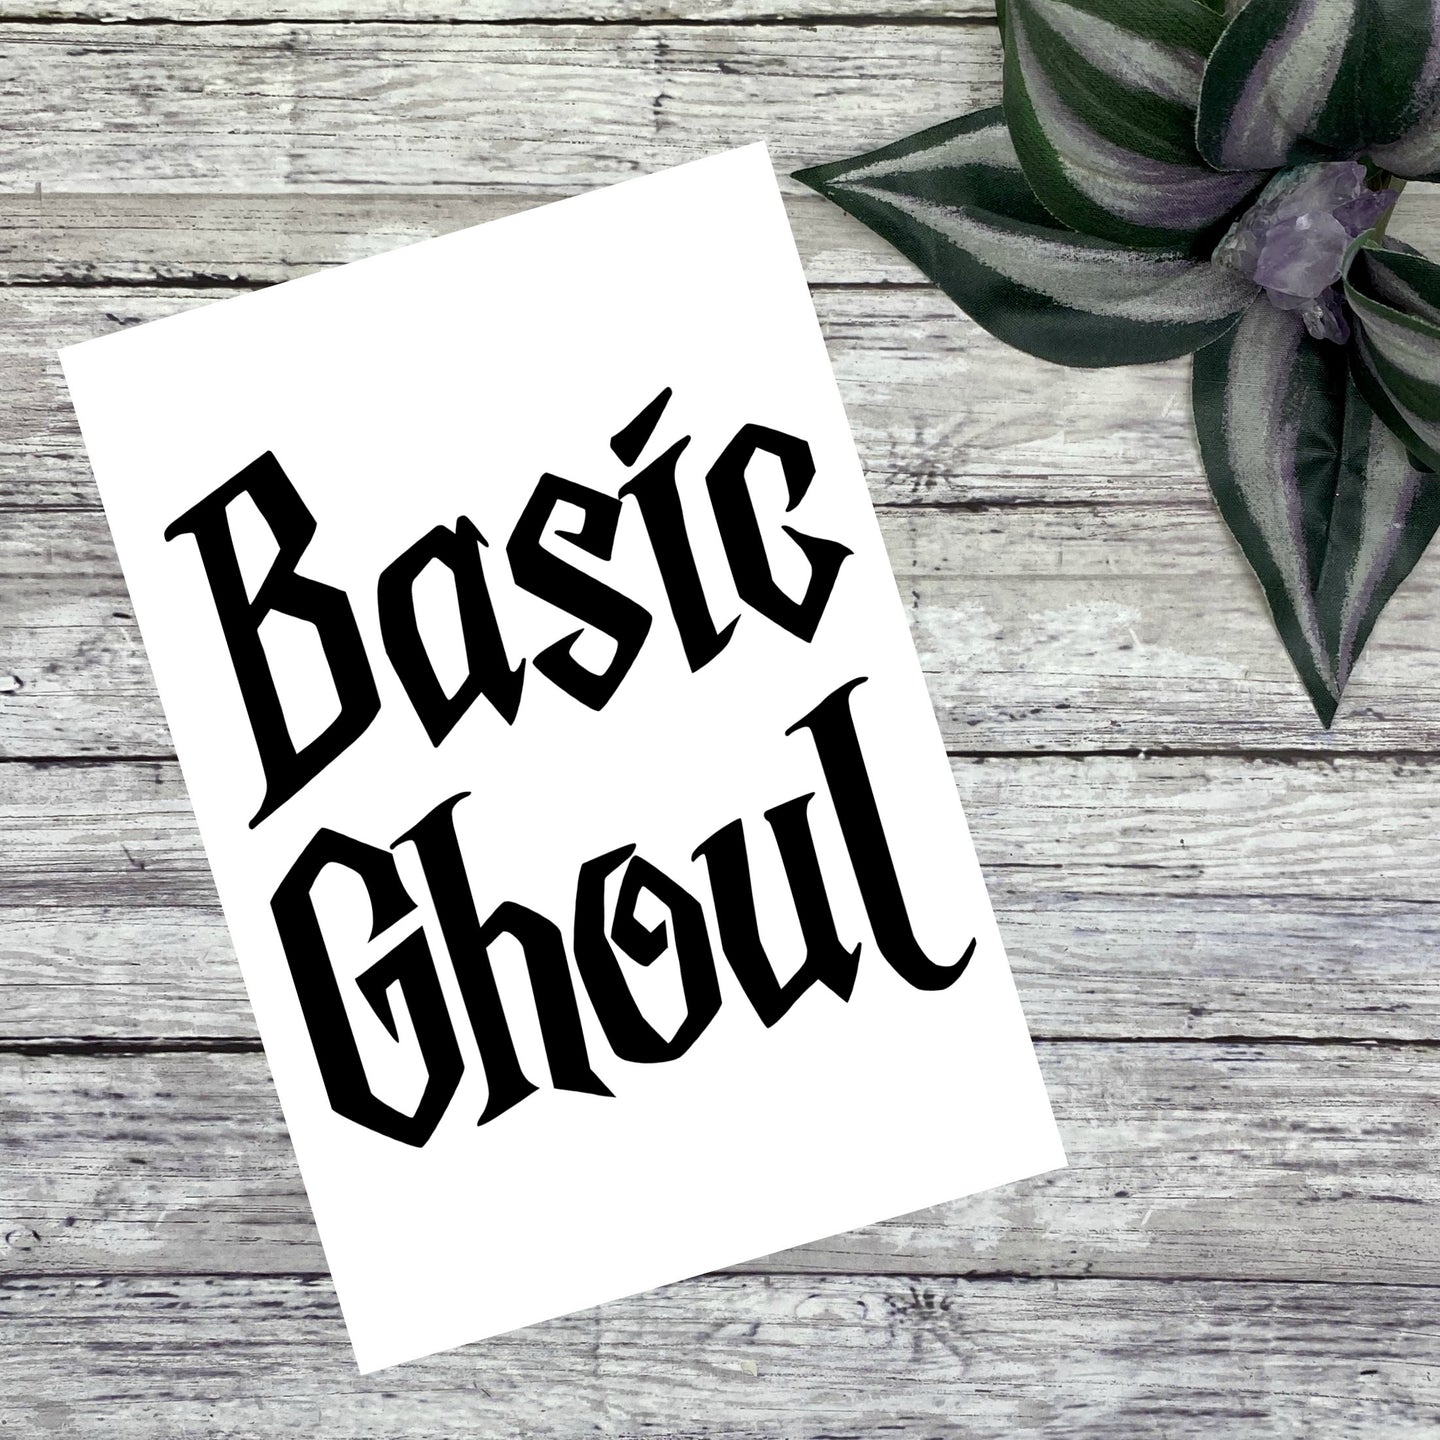 Basic Ghoul Vinyl Decal